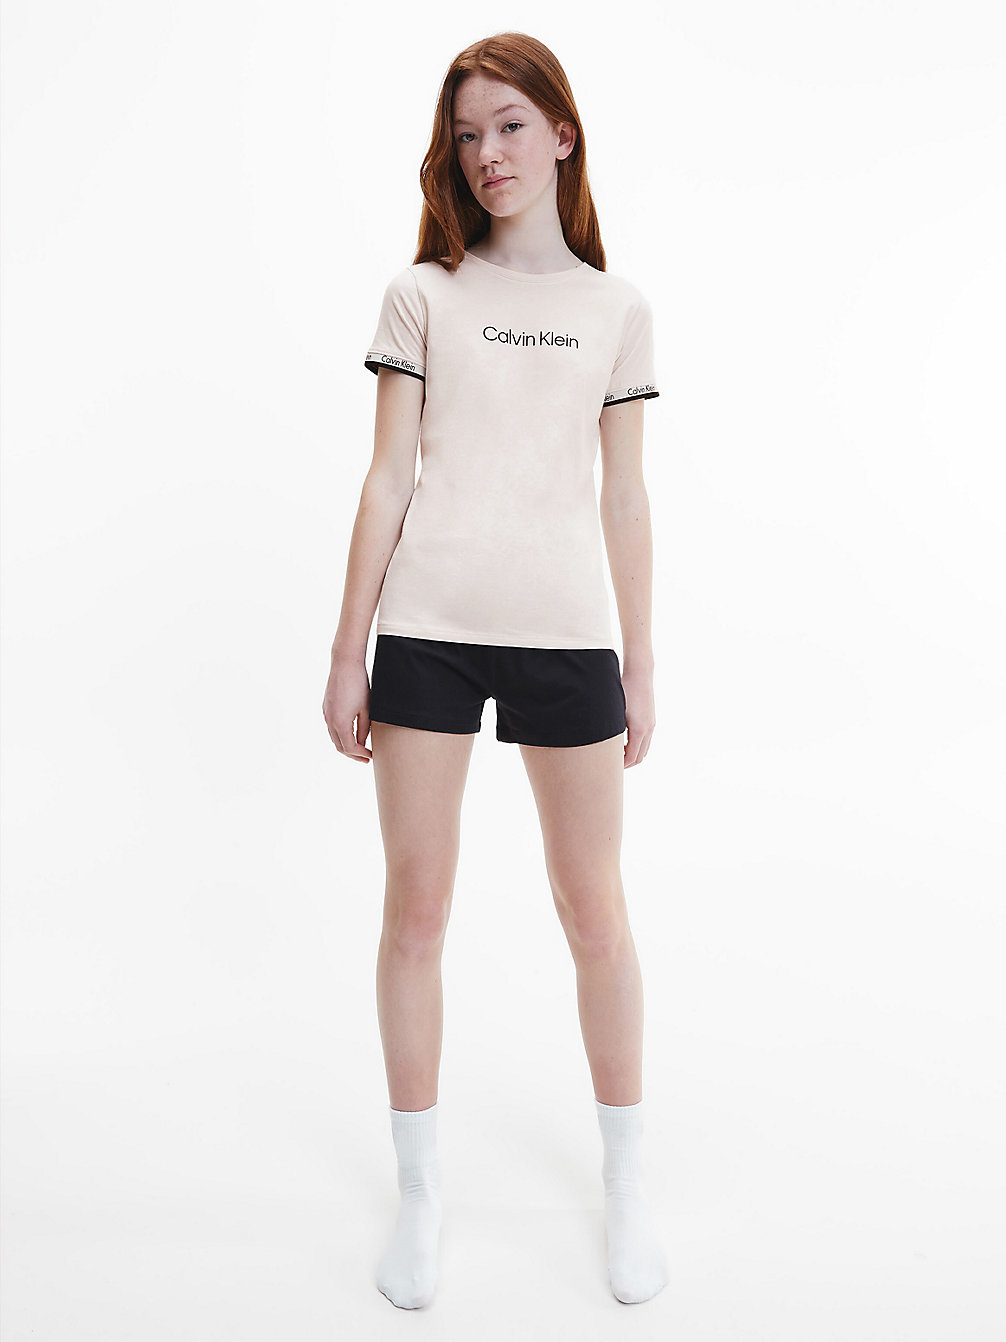 BEACHBEIGE/W/PVHBLACK Shorts Pyjama Set - Modern Cotton undefined girls Calvin Klein